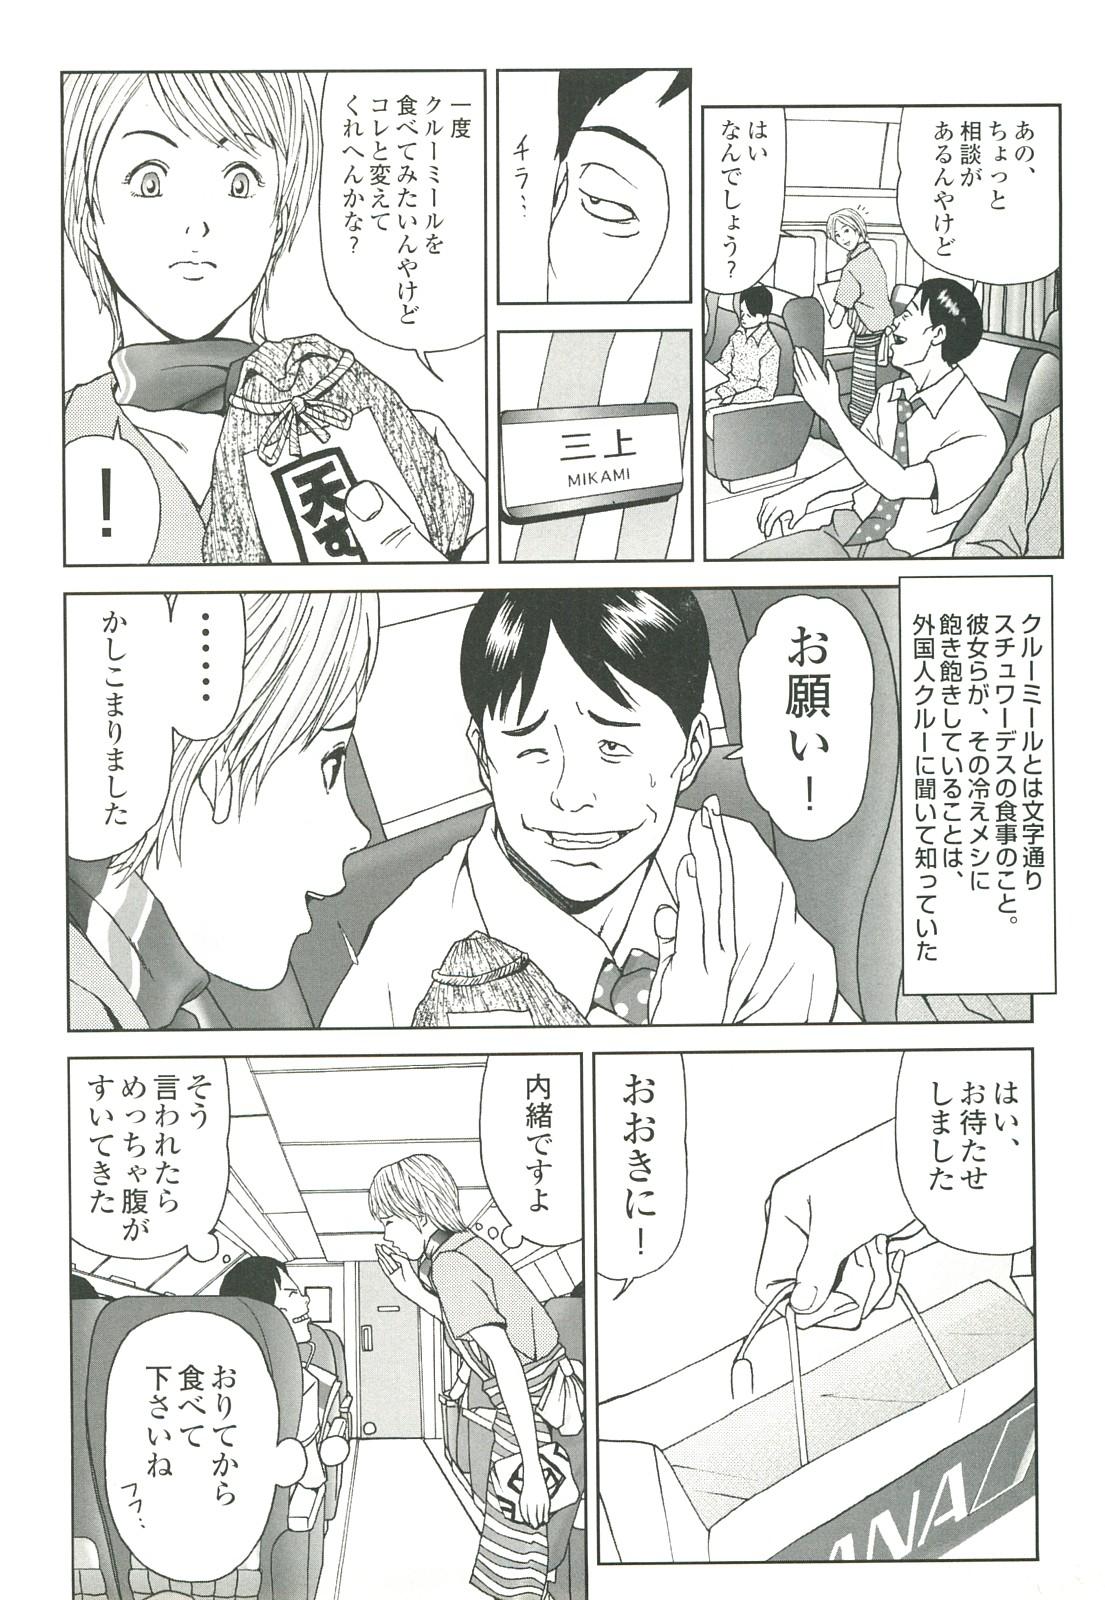 コミック裏モノJAPAN Vol.18 今井のりたつスペシャル号 257